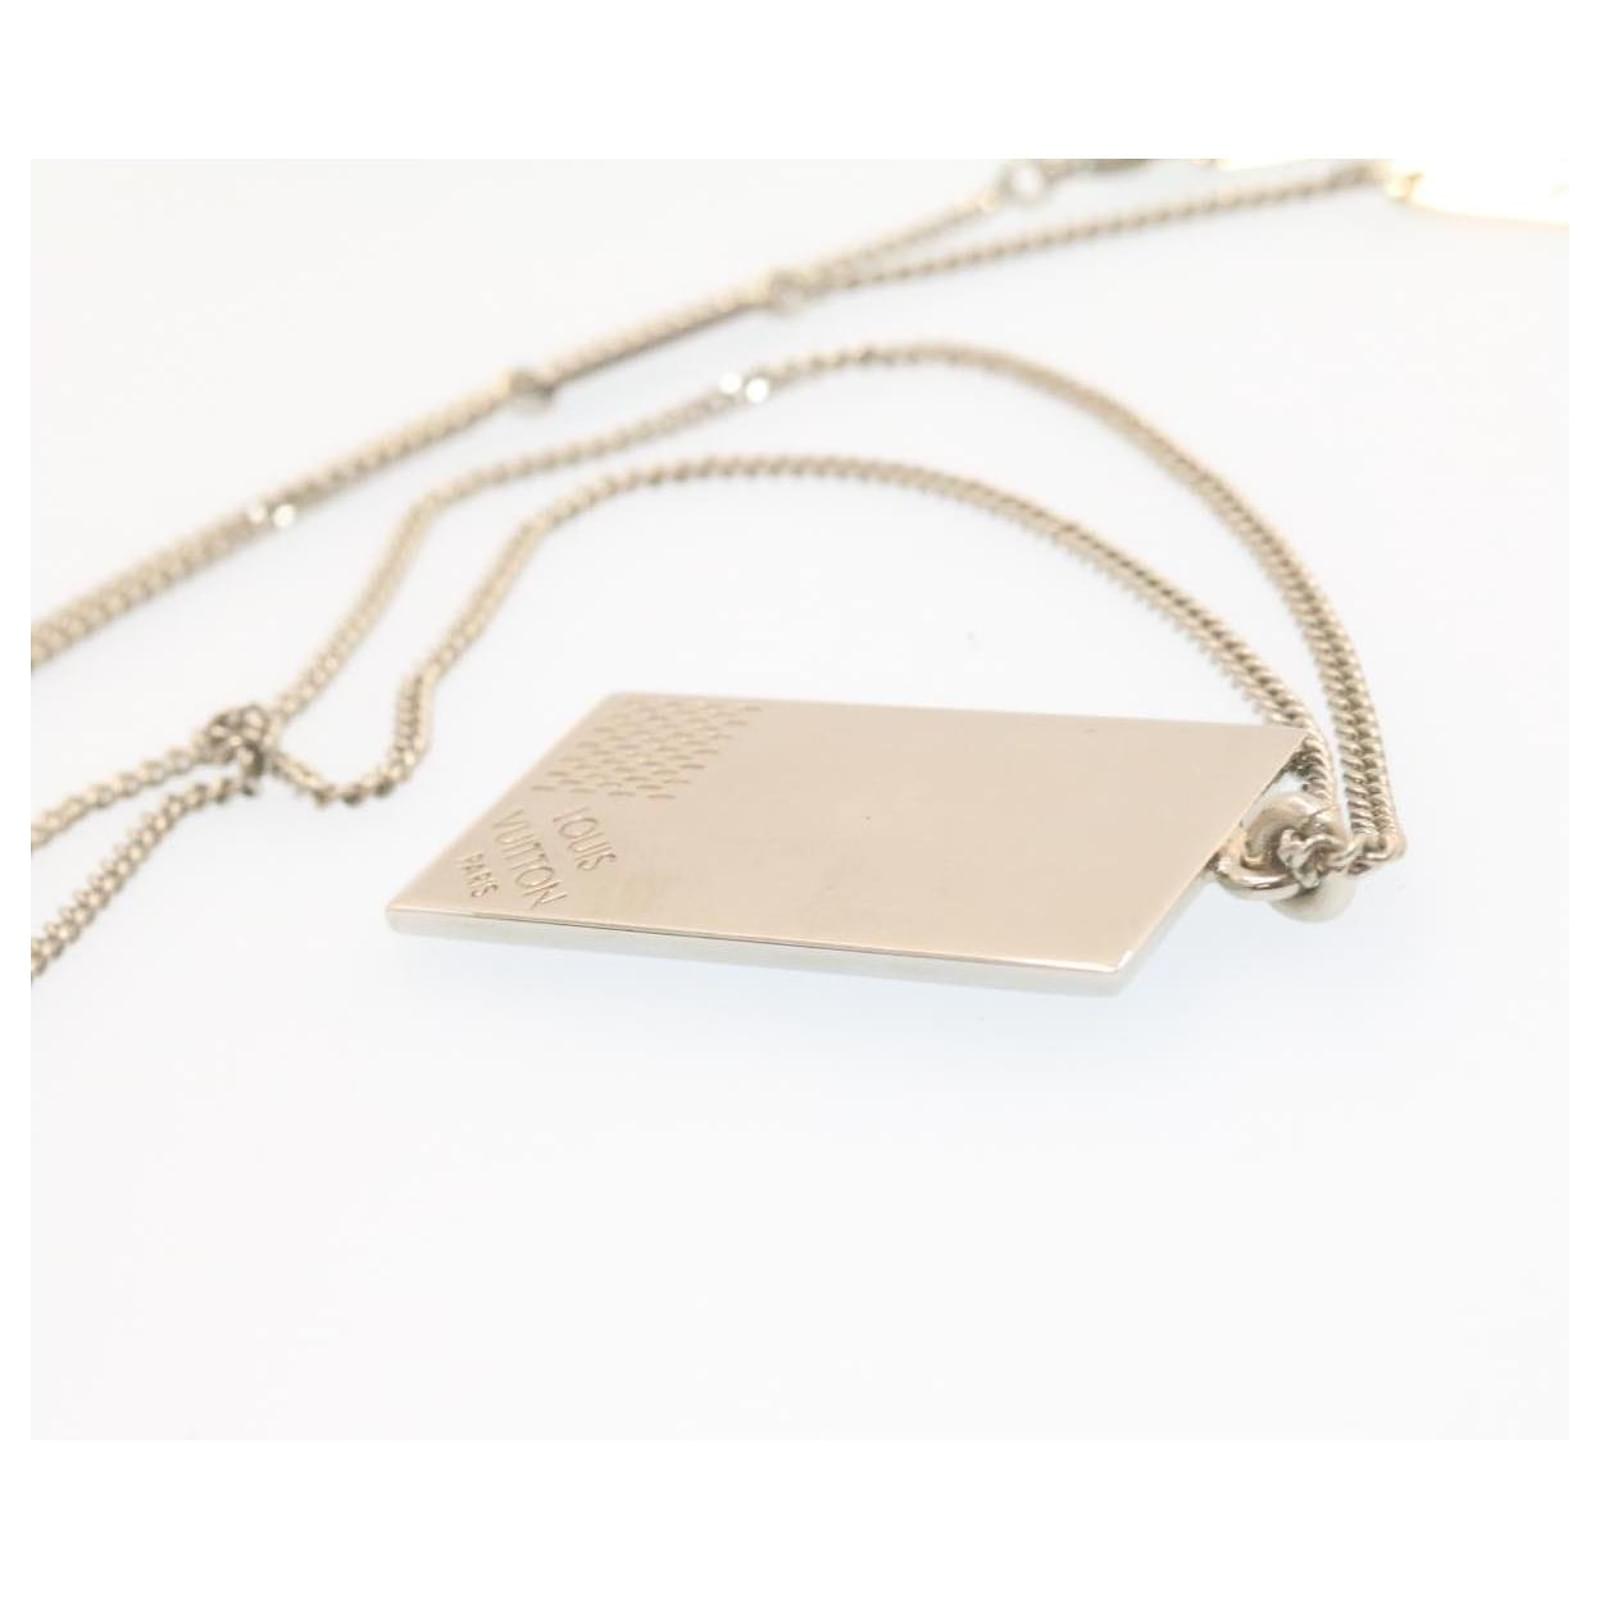 Louis Vuitton LV Collier Plaque Damier Tag Pendant Necklace